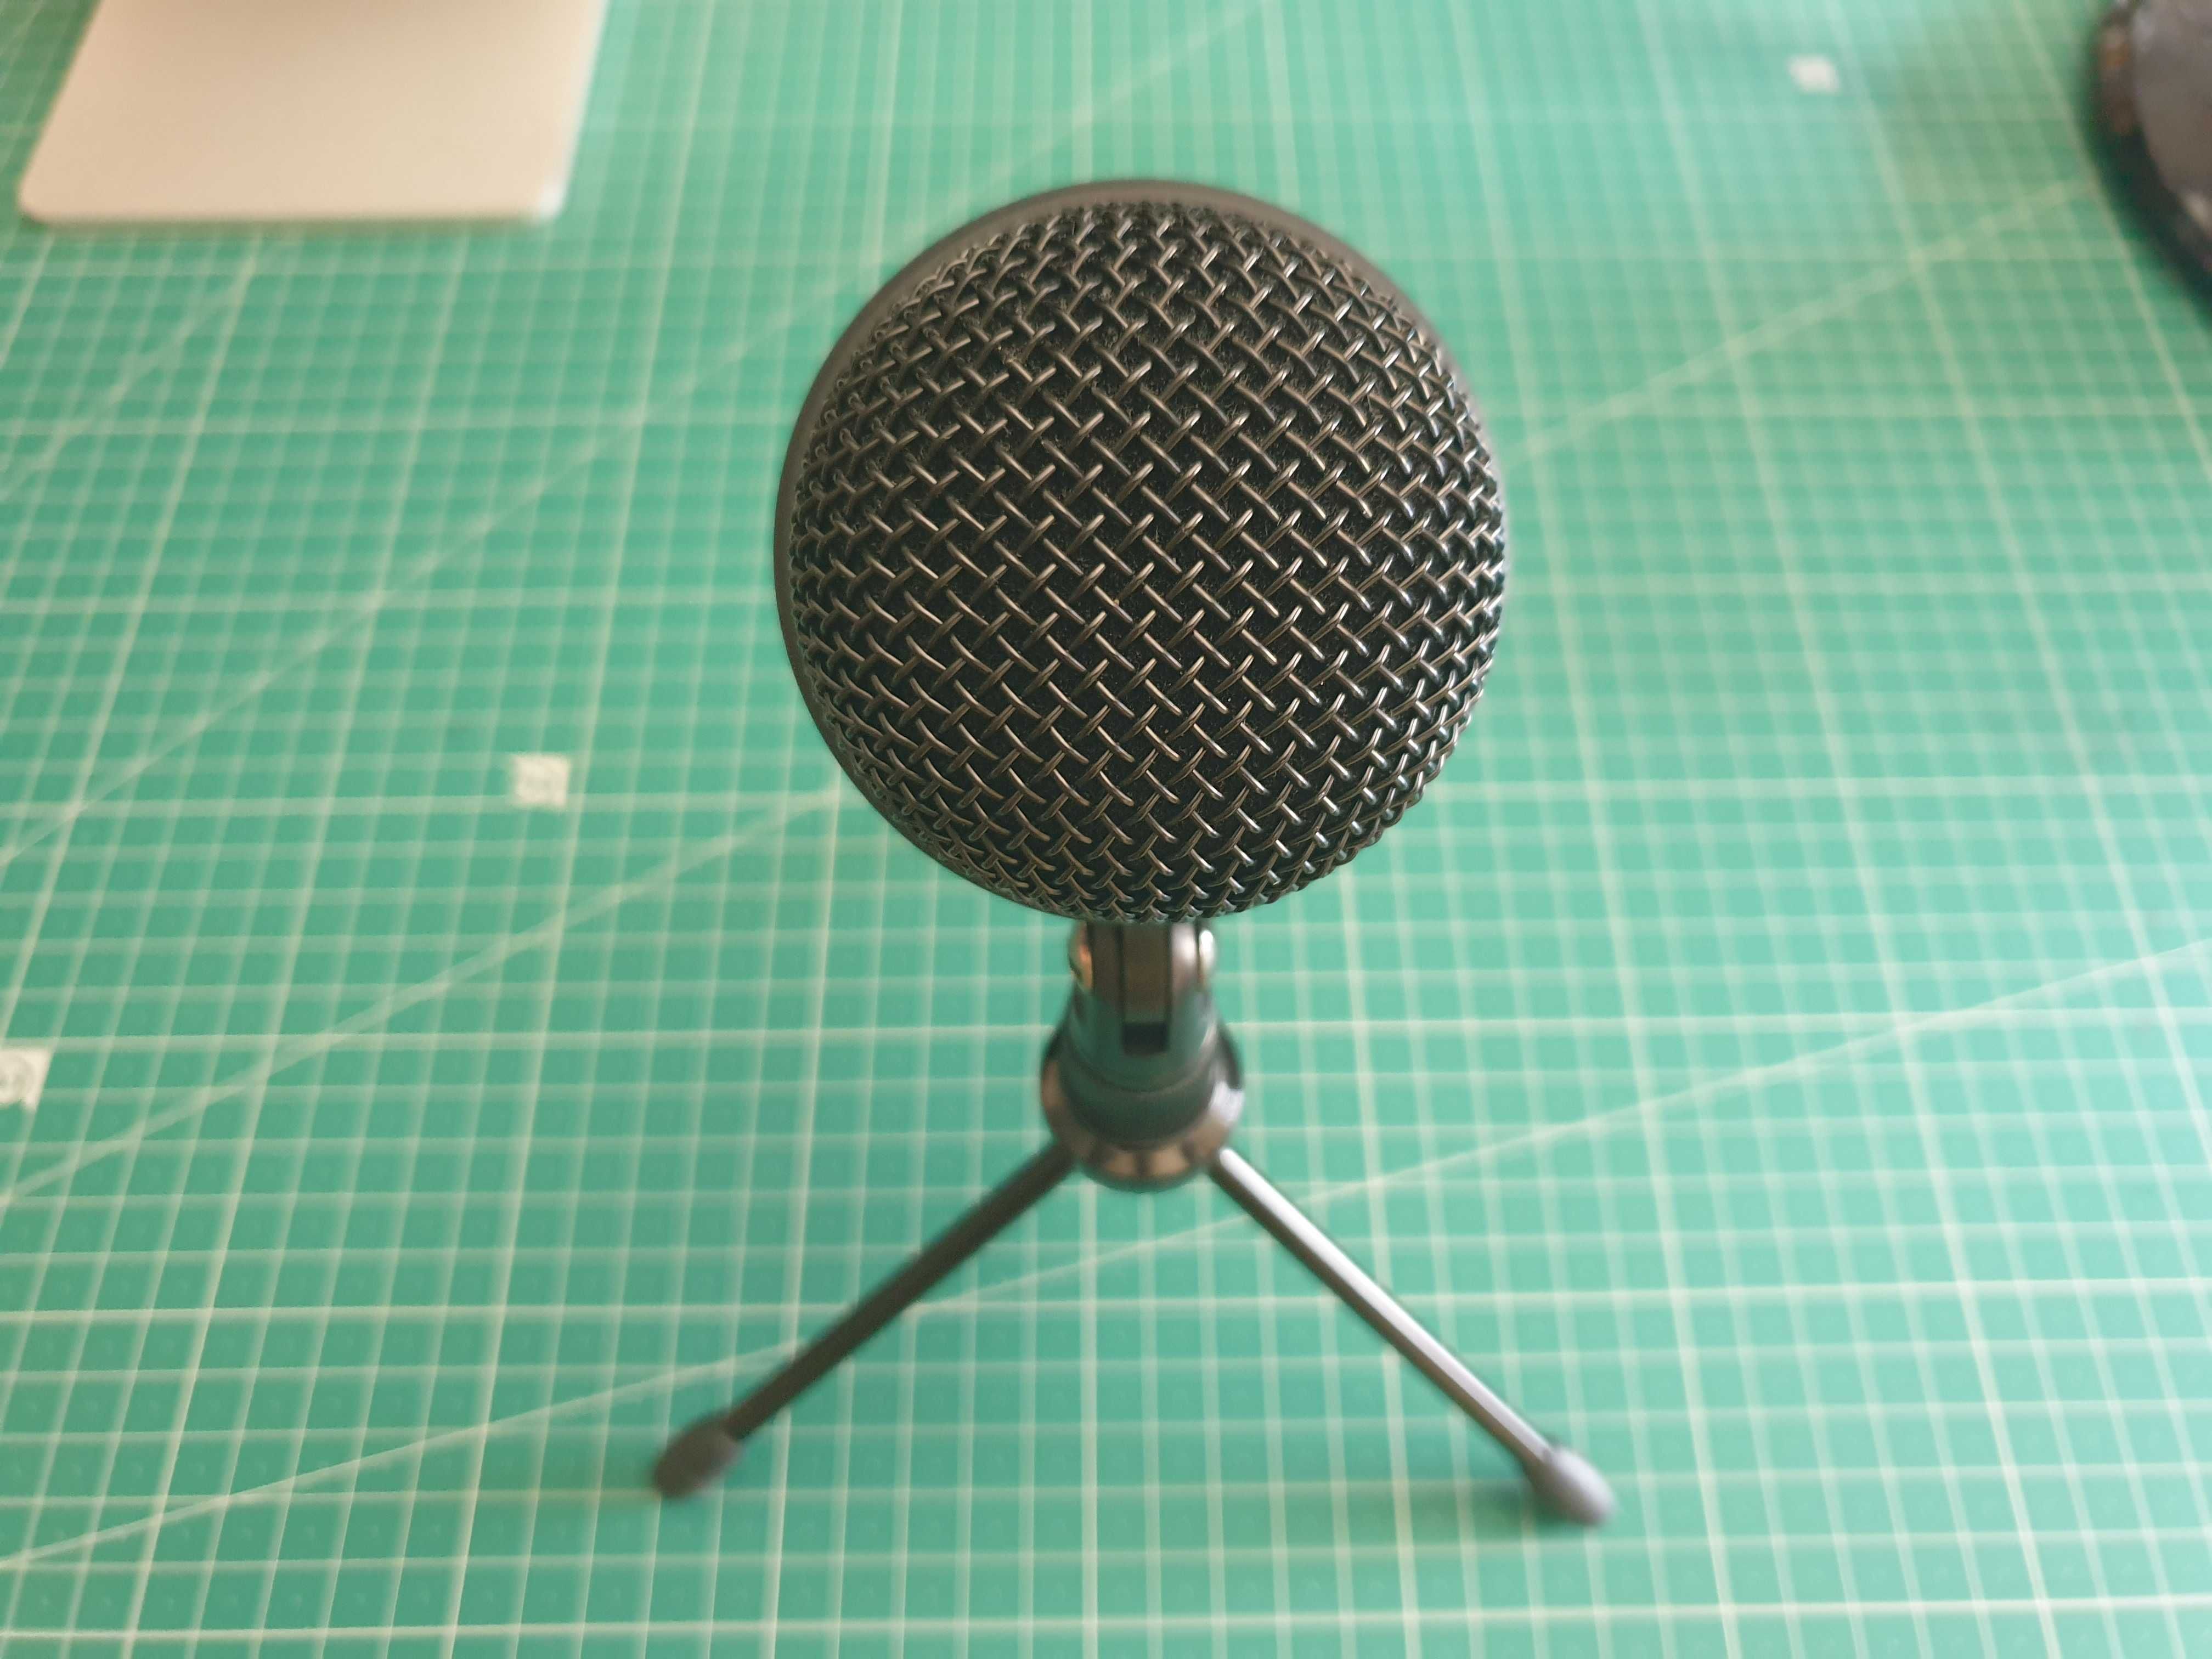 Microfone KROM Kimu Pro